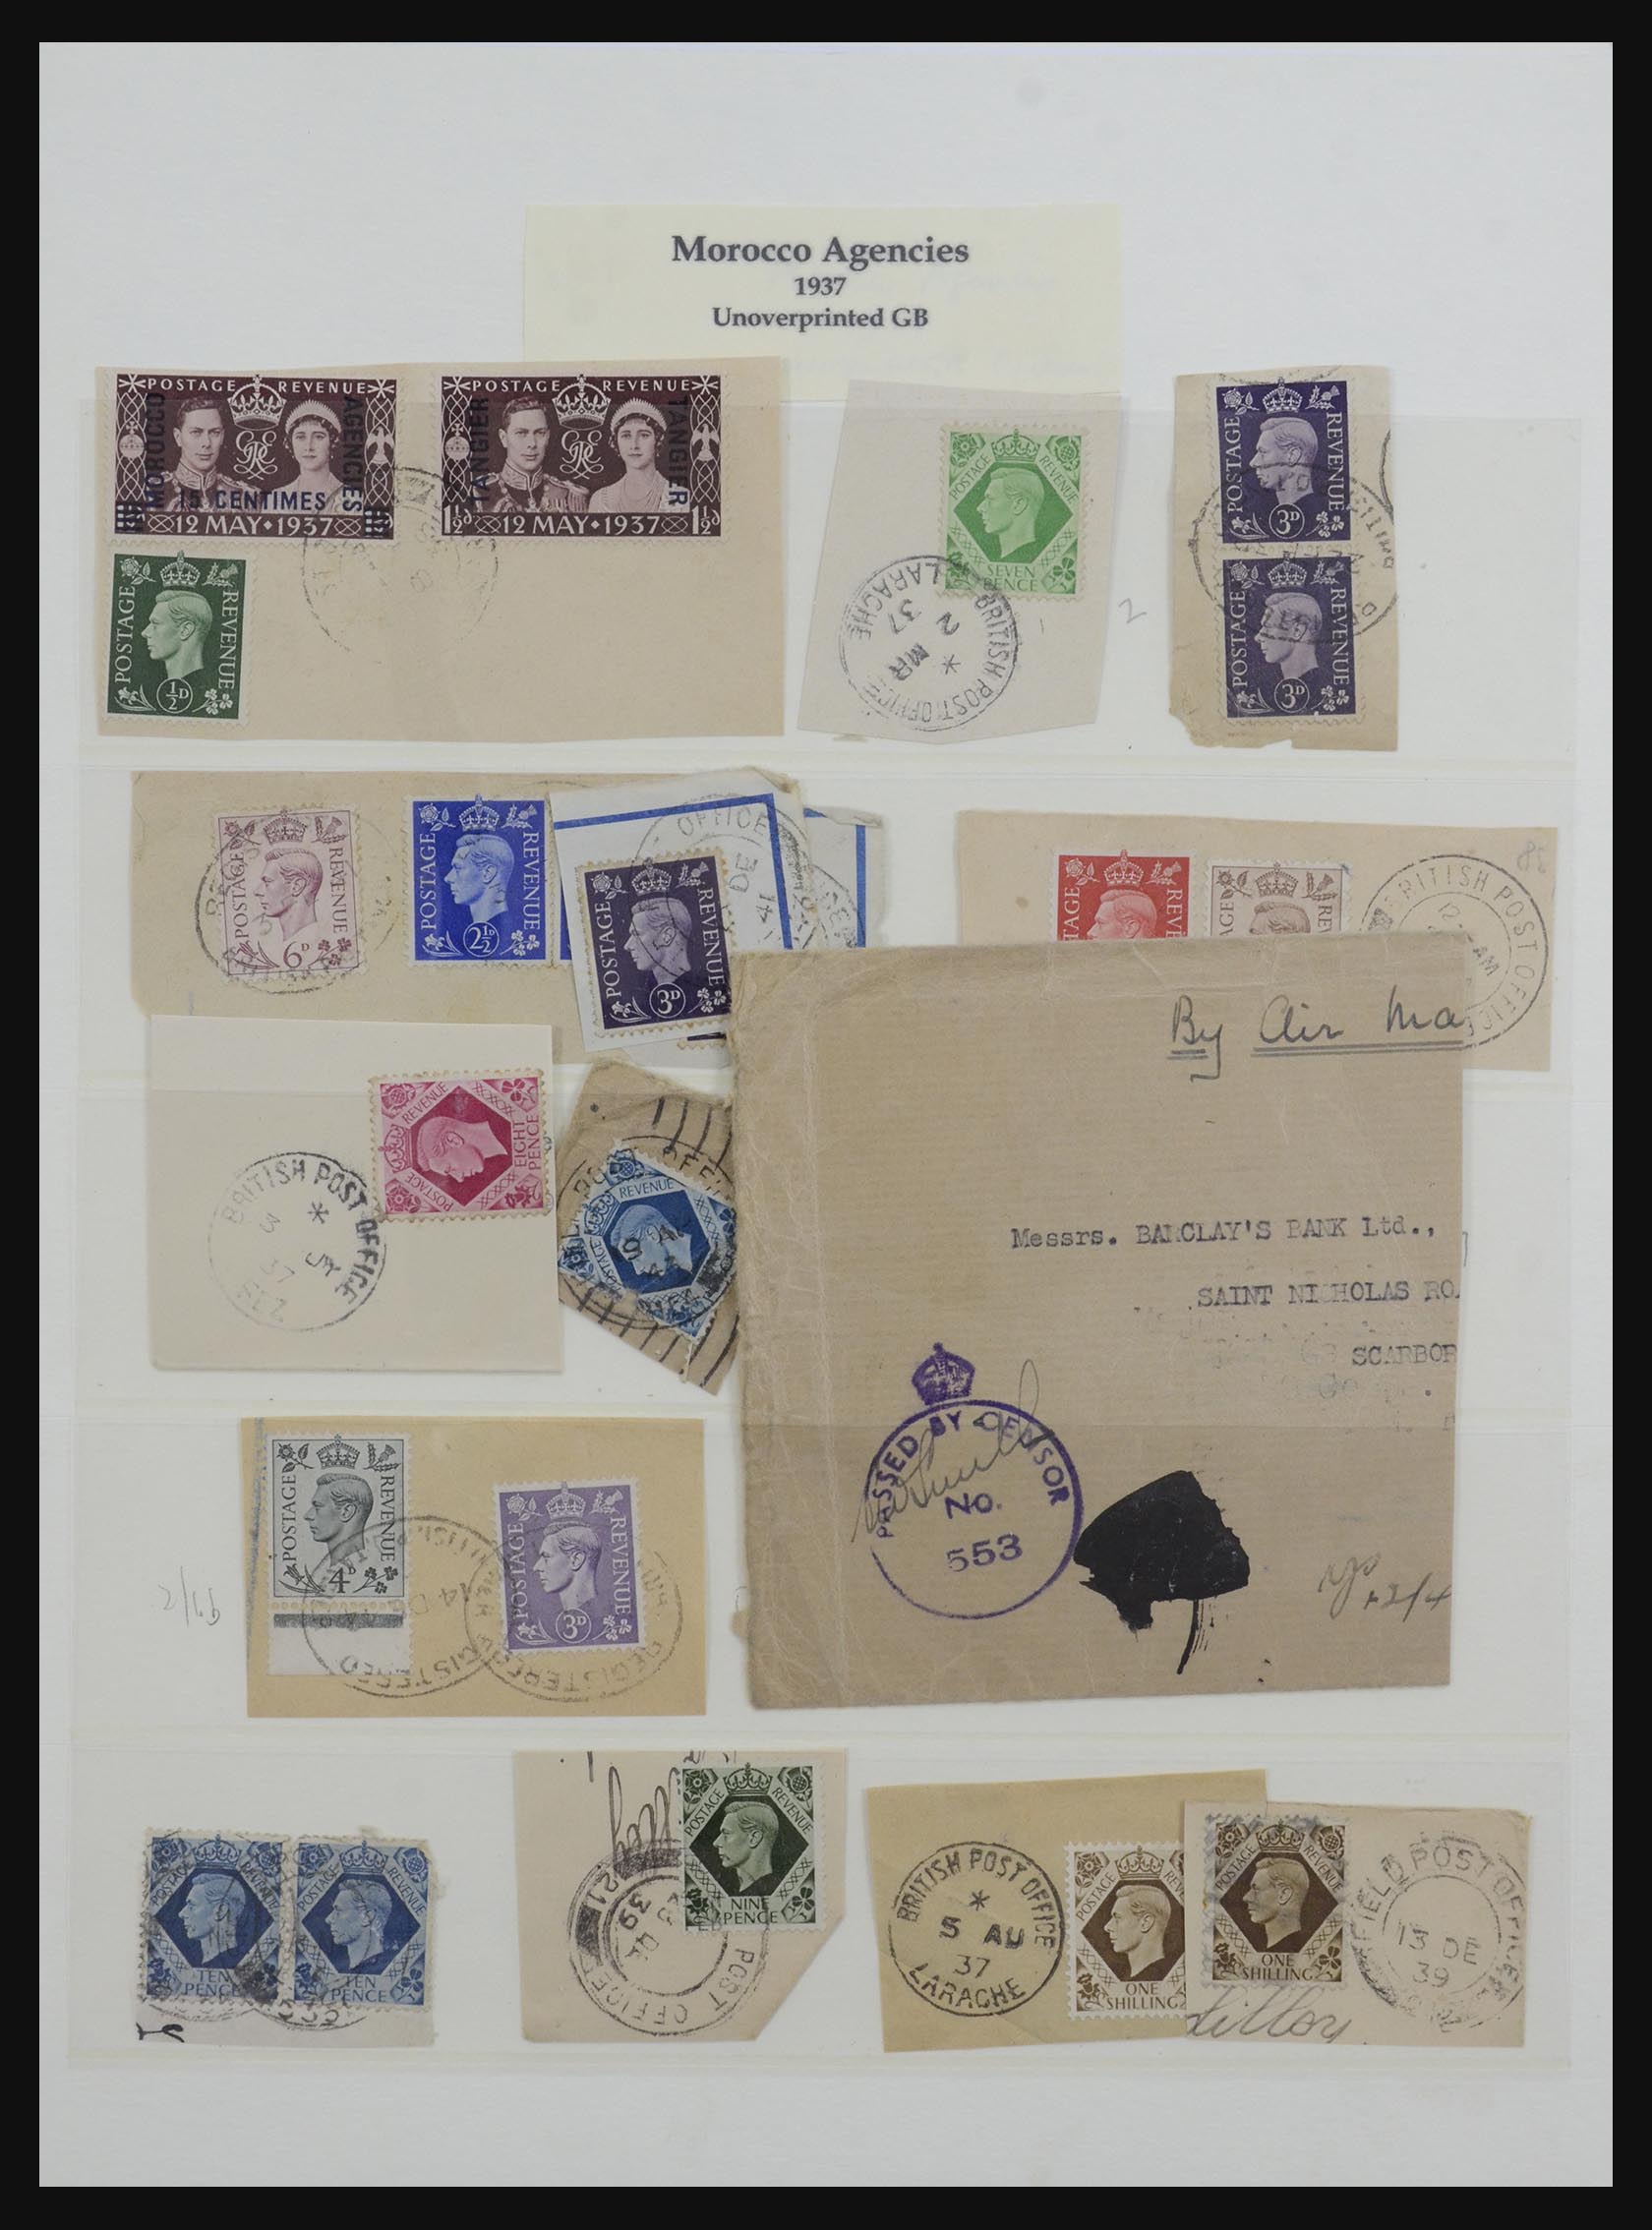 32228 032 - 32228 Brits Levant en Marokko Agencies 1857-1952.